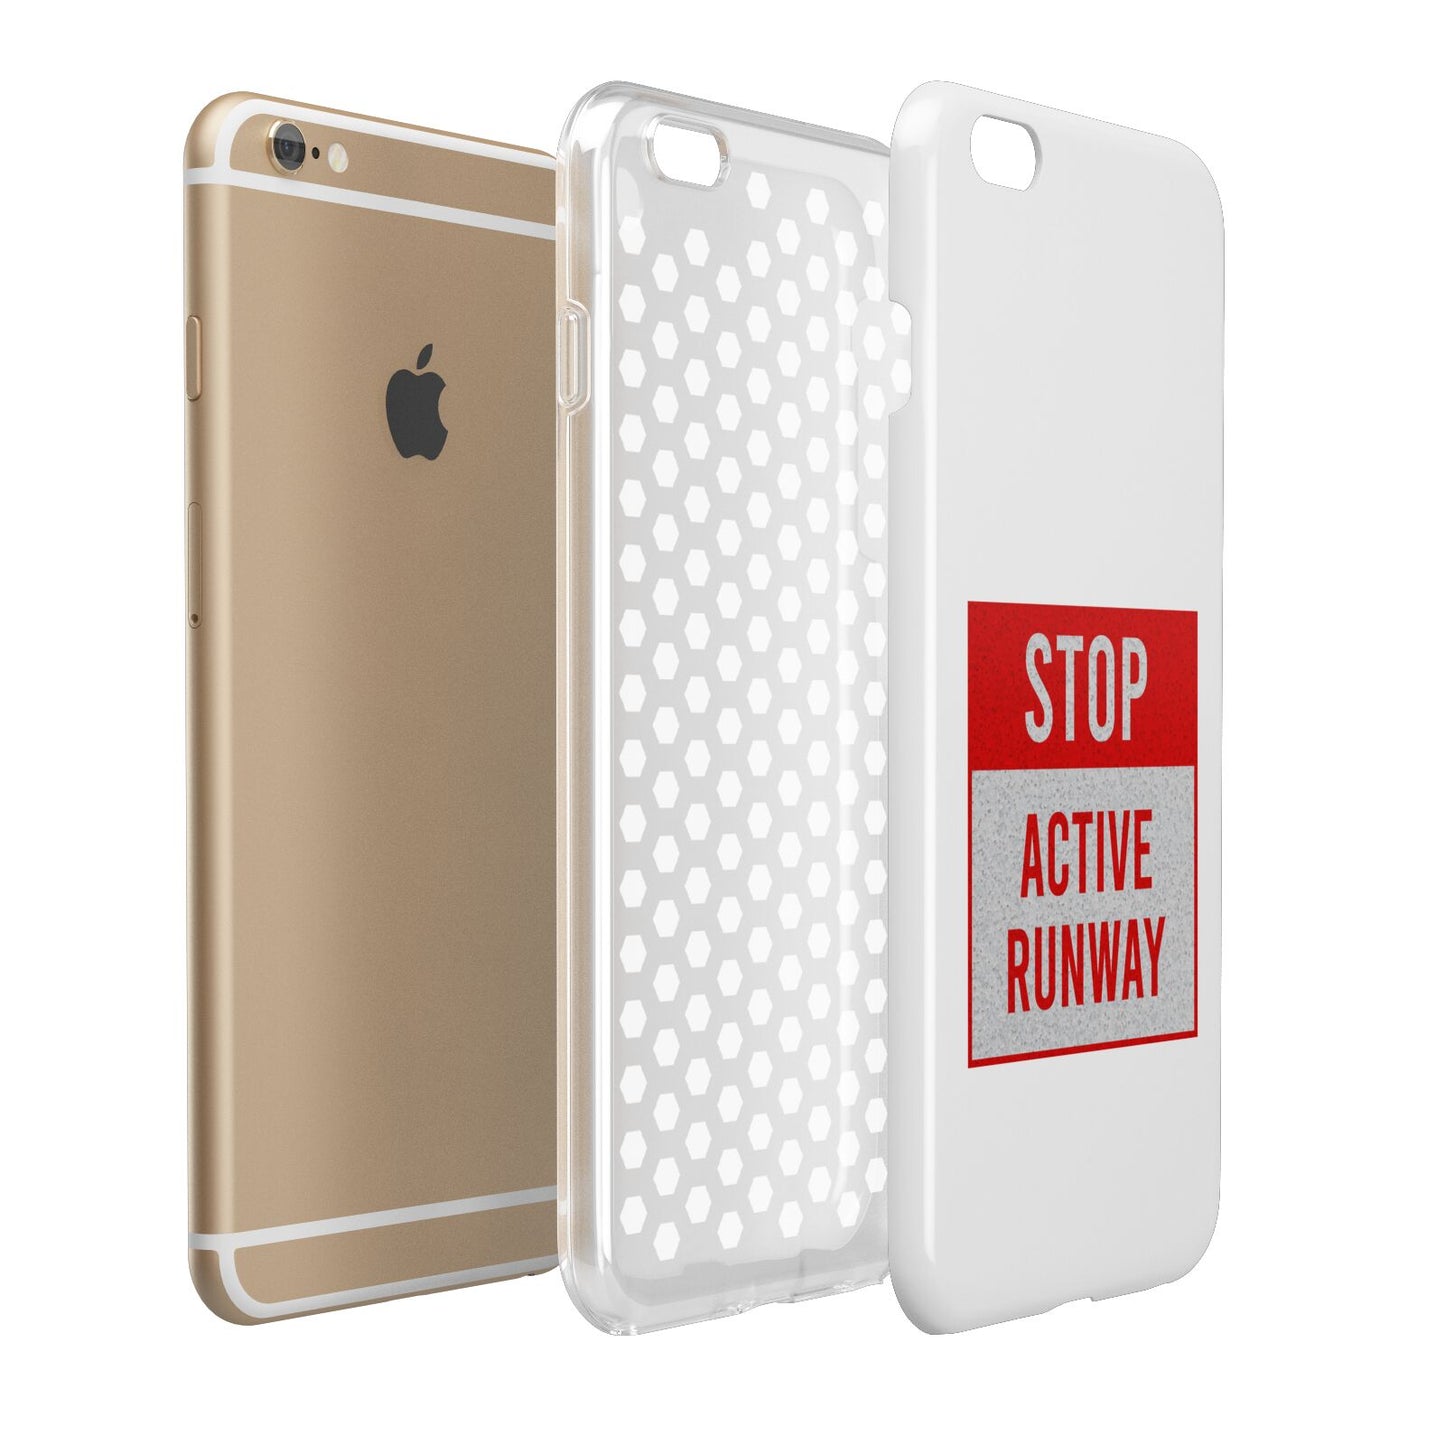 Stop Active Runway Apple iPhone 6 Plus 3D Tough Case